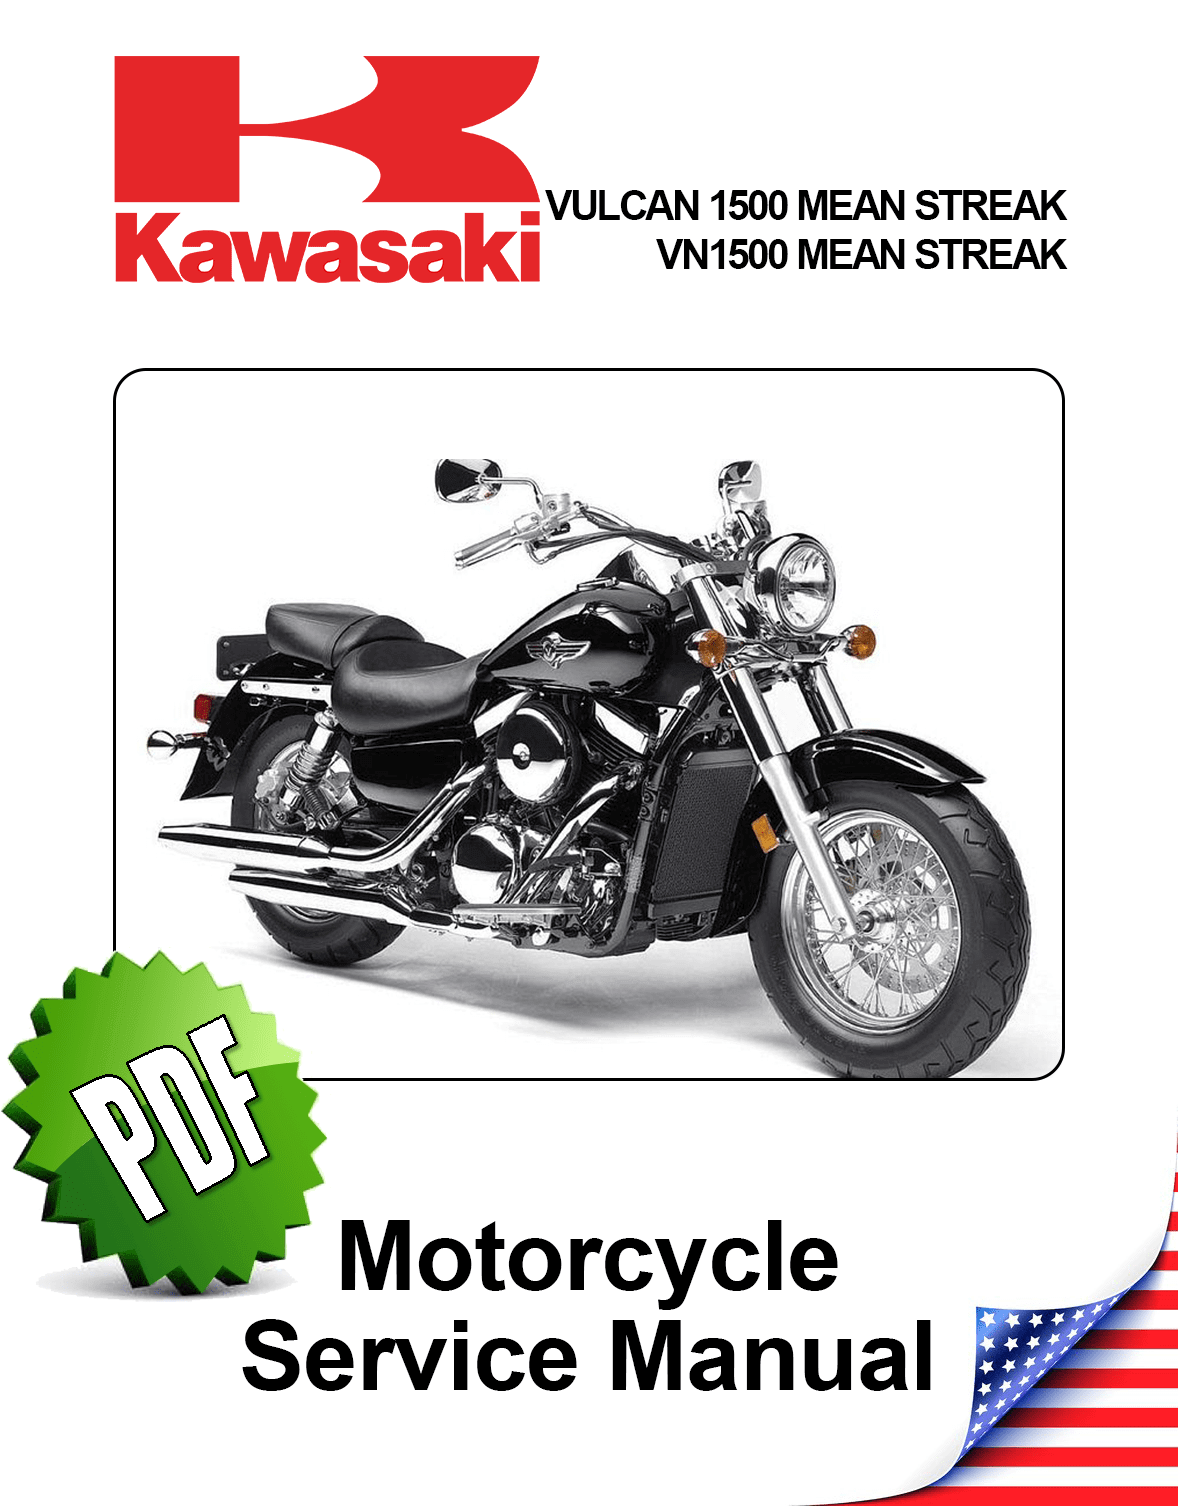 Kawasaki Vulcan VN1500 Mean Streak